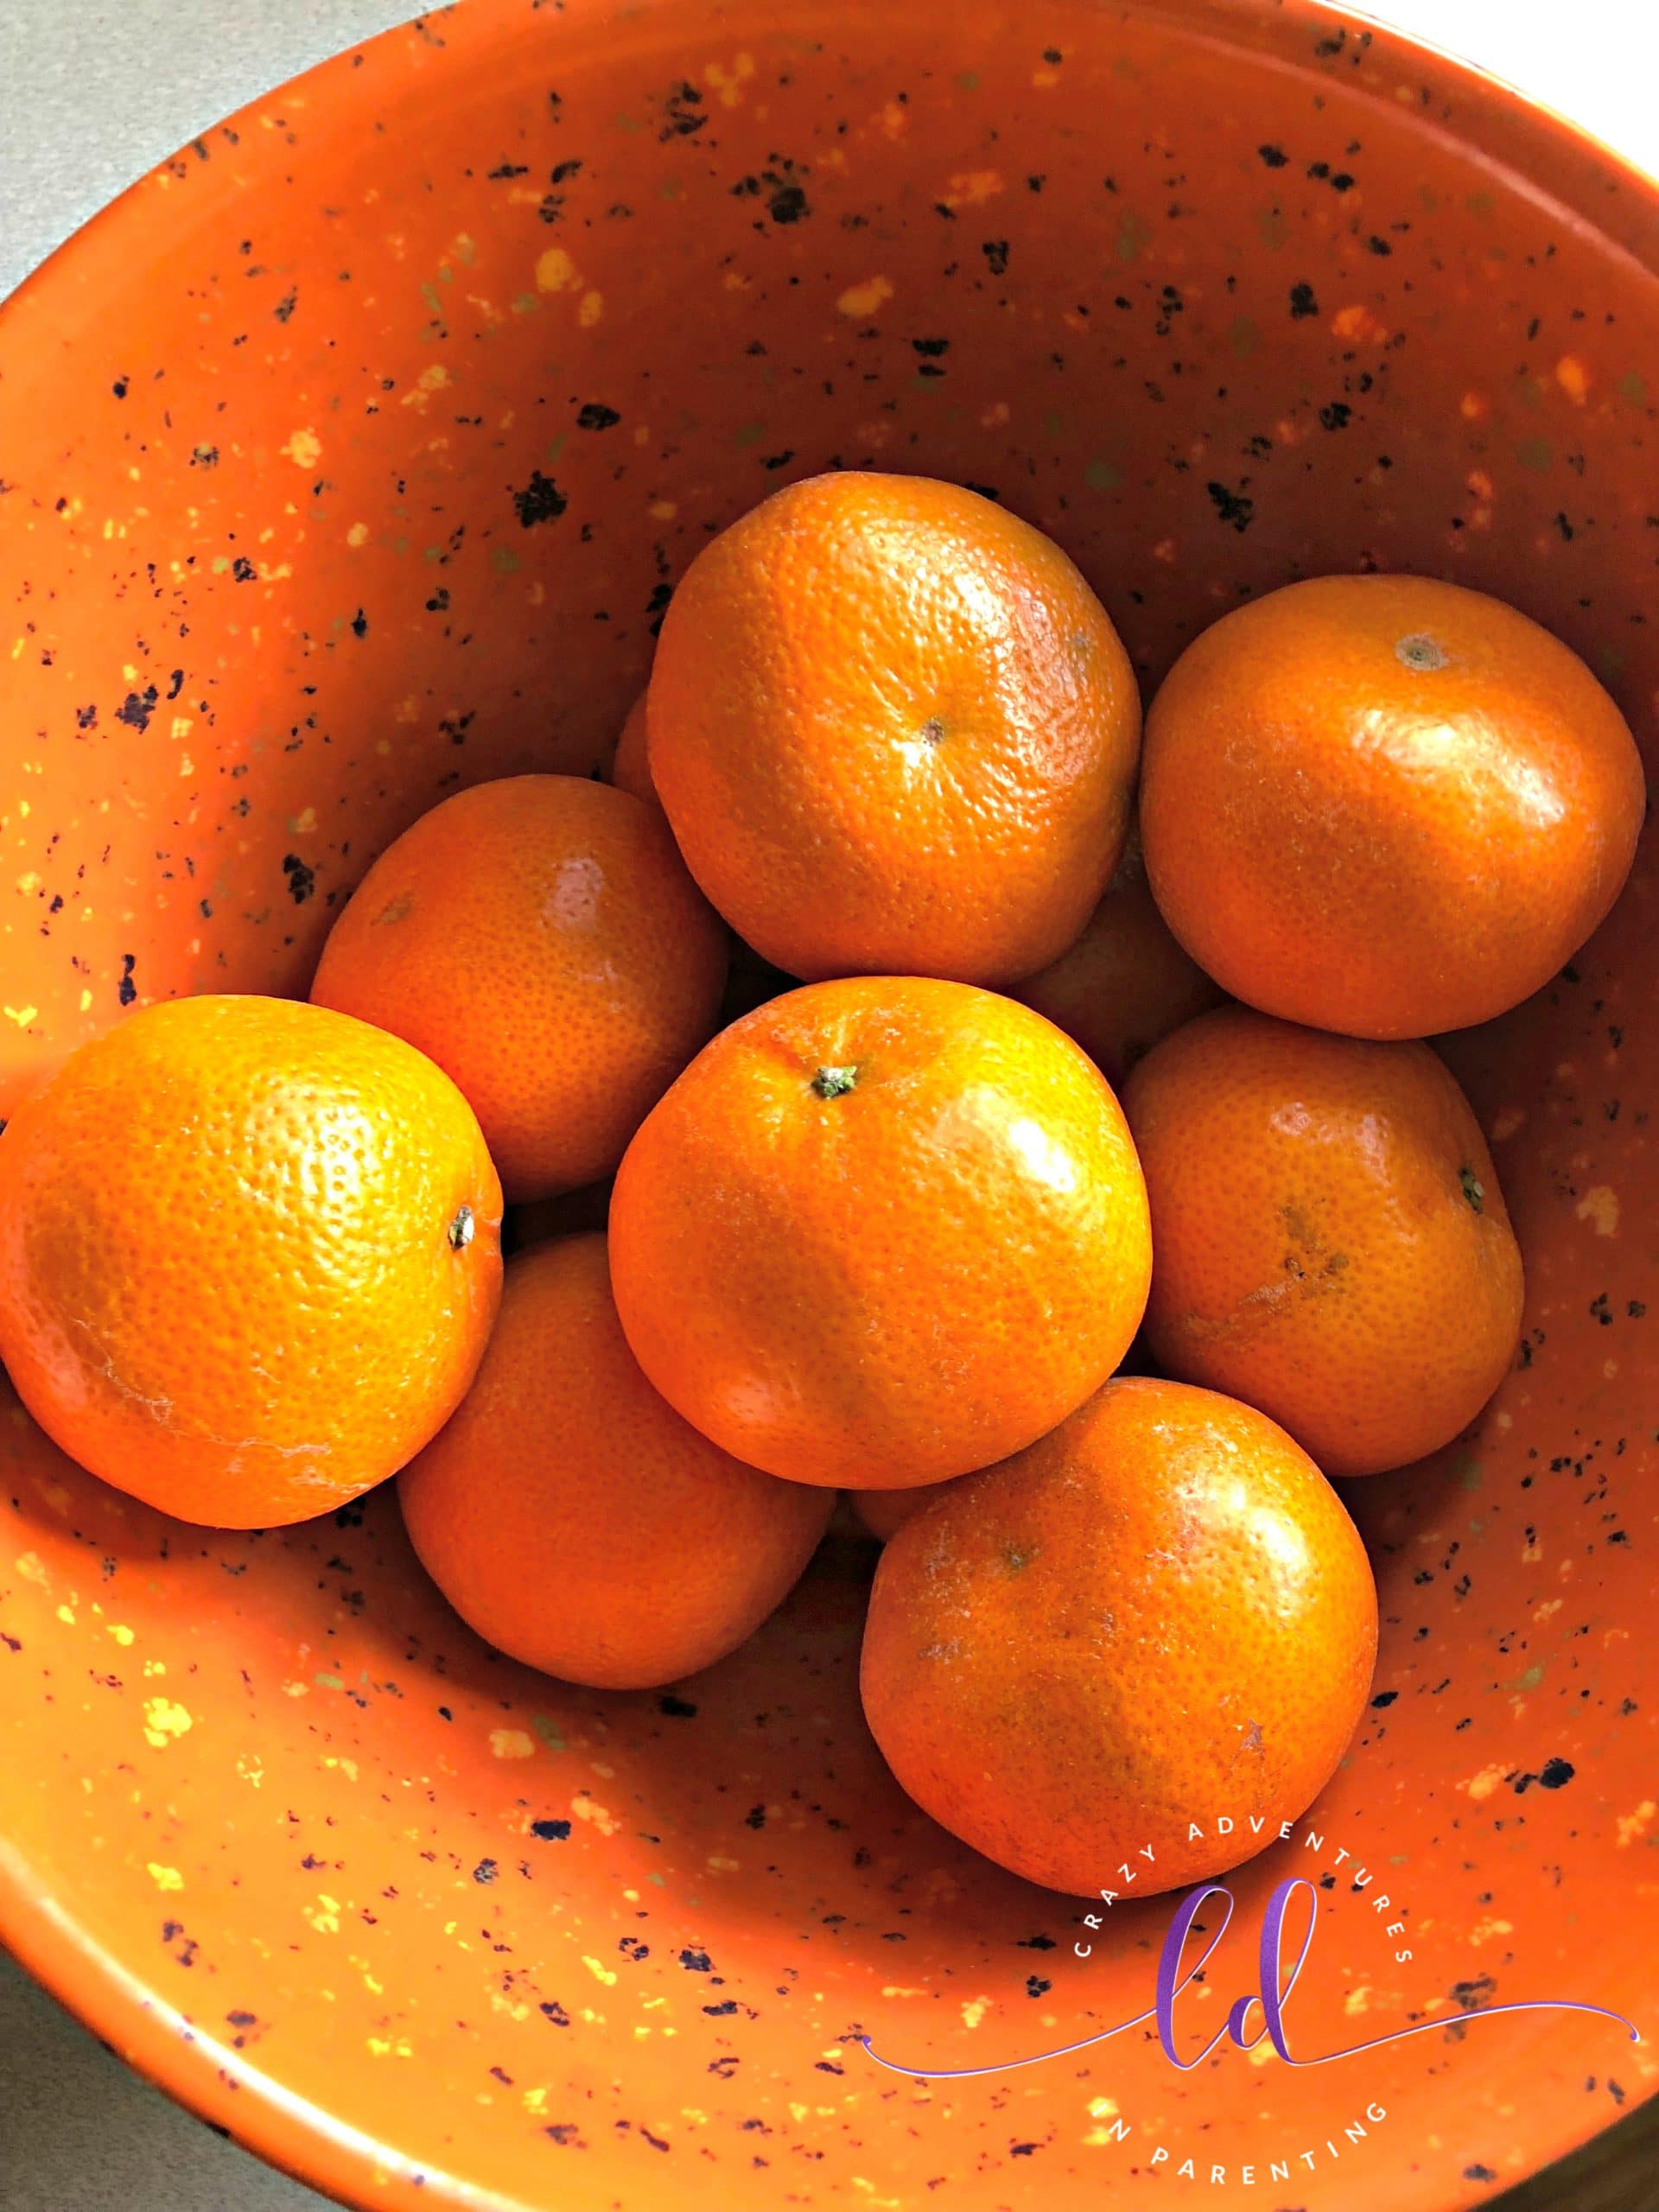 mandarin oranges provide vitamin c